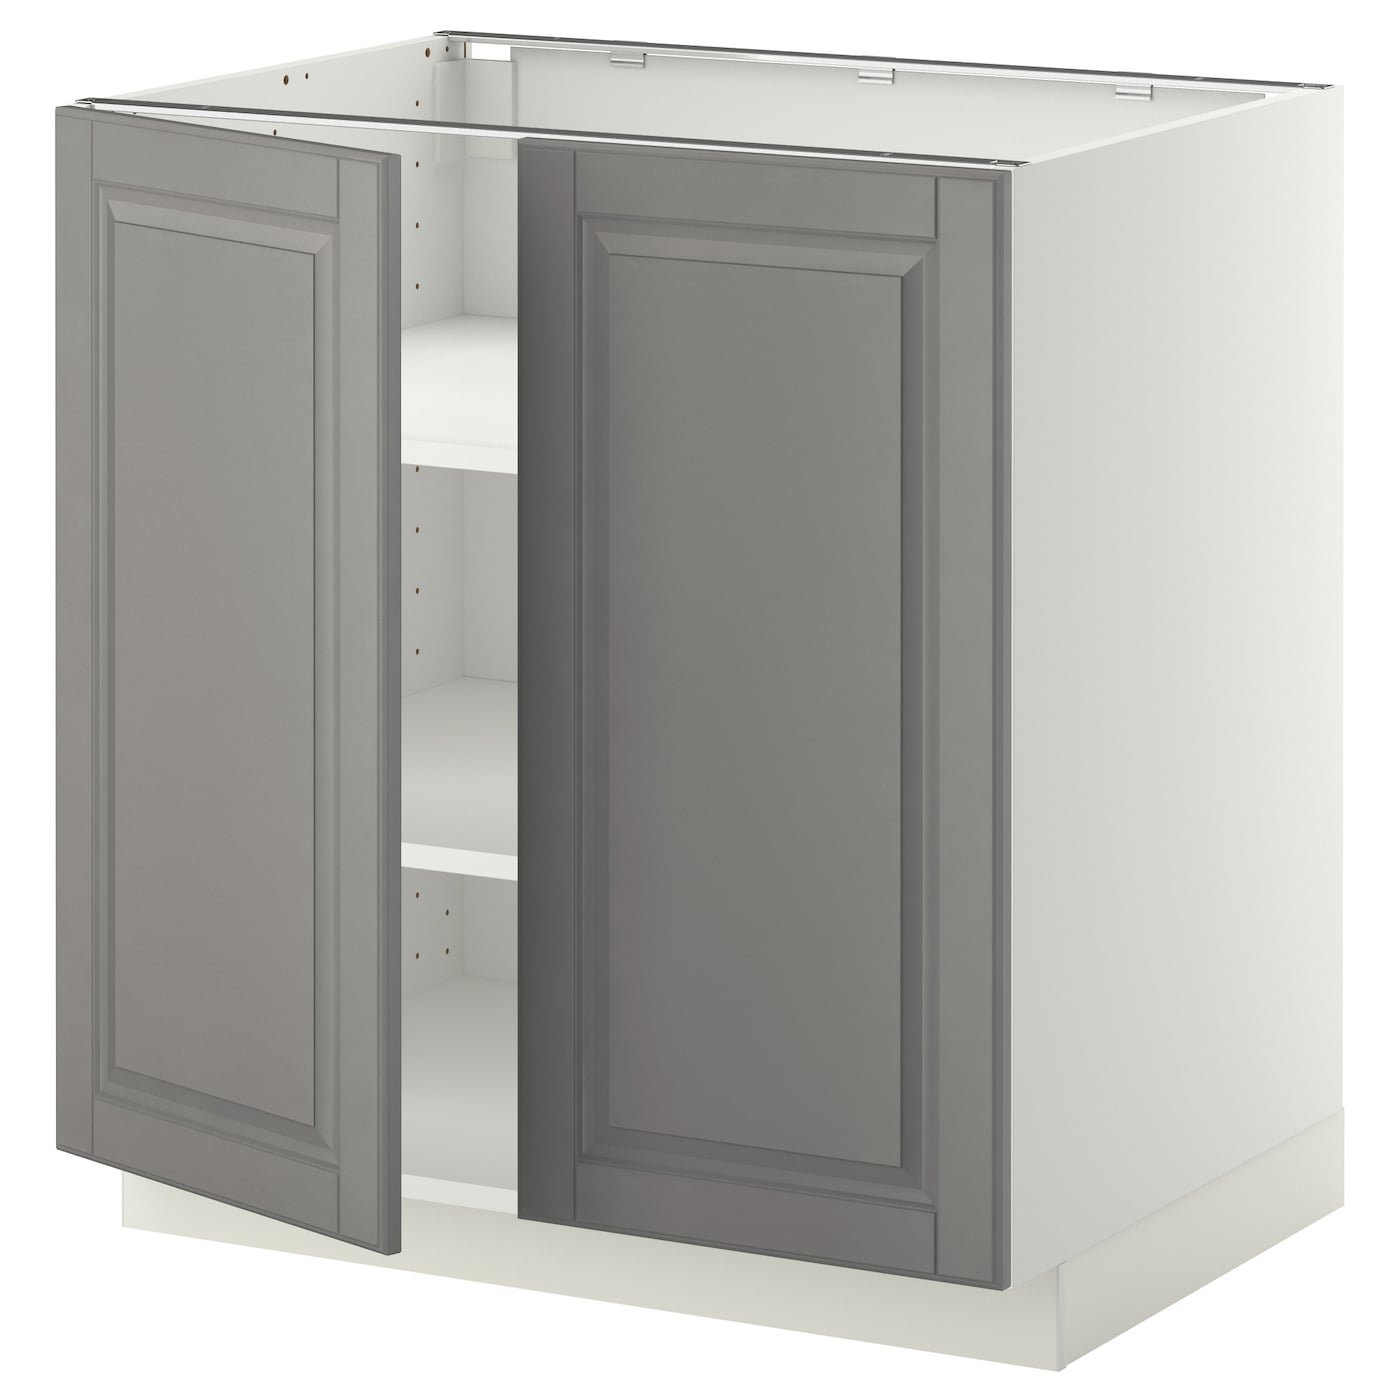 Напольный шкаф - IKEA METOD, 88x62x80см, белый/серый, МЕТОД ИКЕА